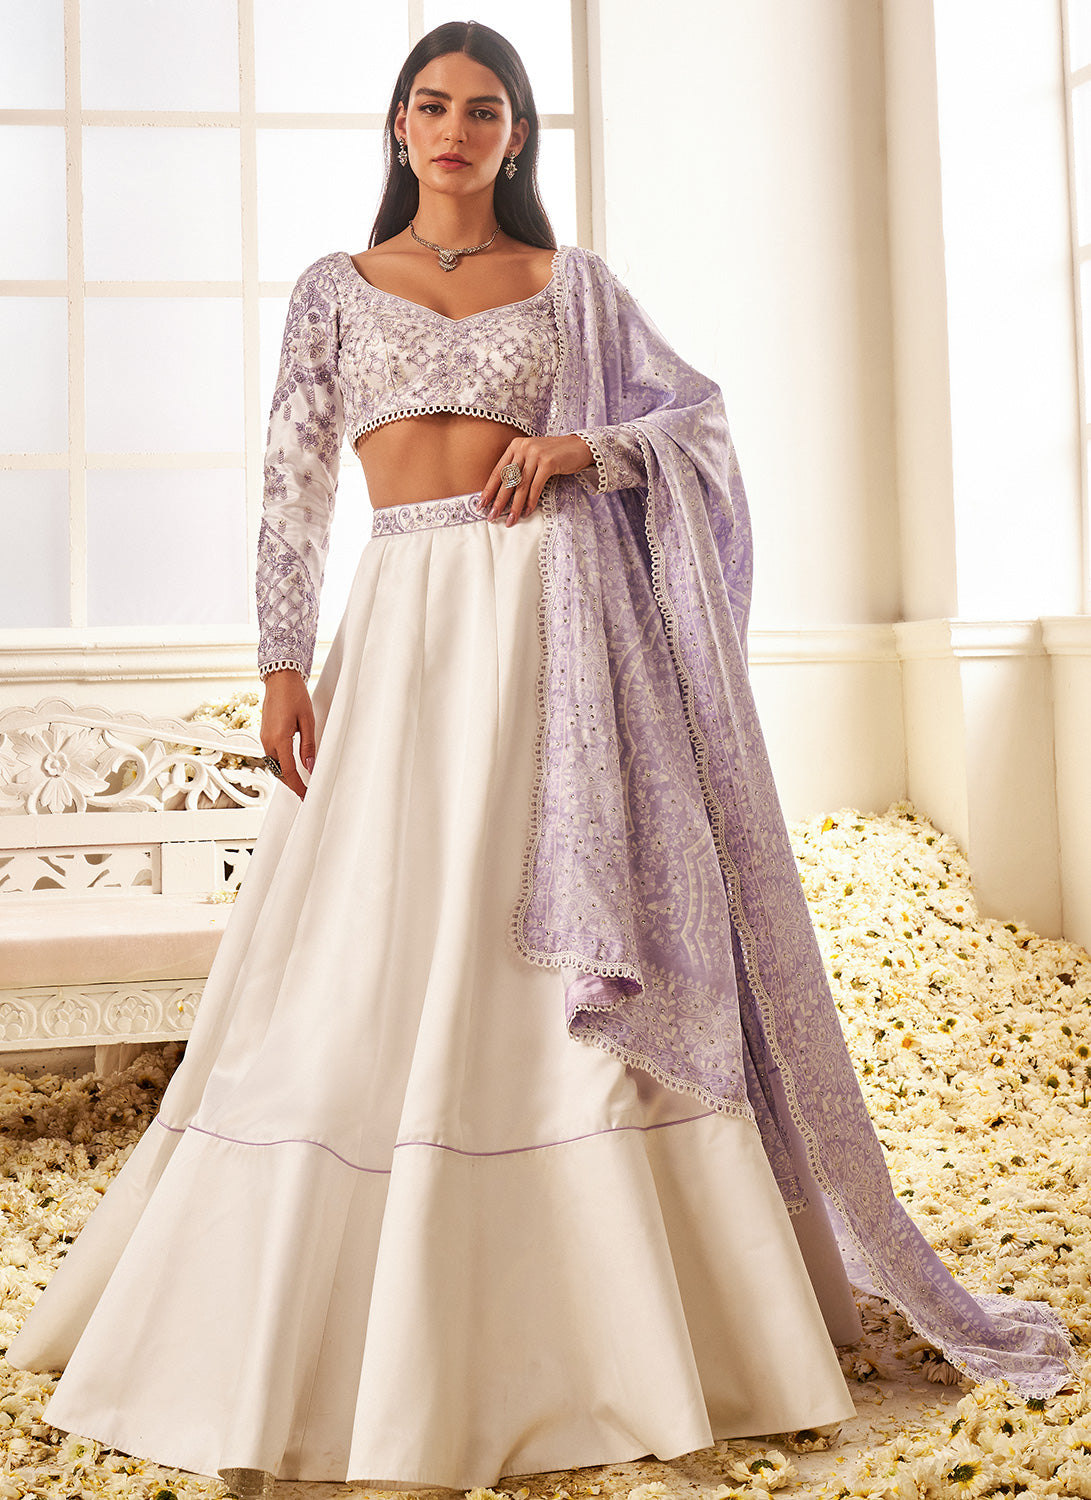 4 Dupptta Option White Lehenga Choli for Women Lenghas Sabyasachi Lengha  for Women Ready to Wear Indian Legnha for Women Sabyasachi Lengha - Etsy